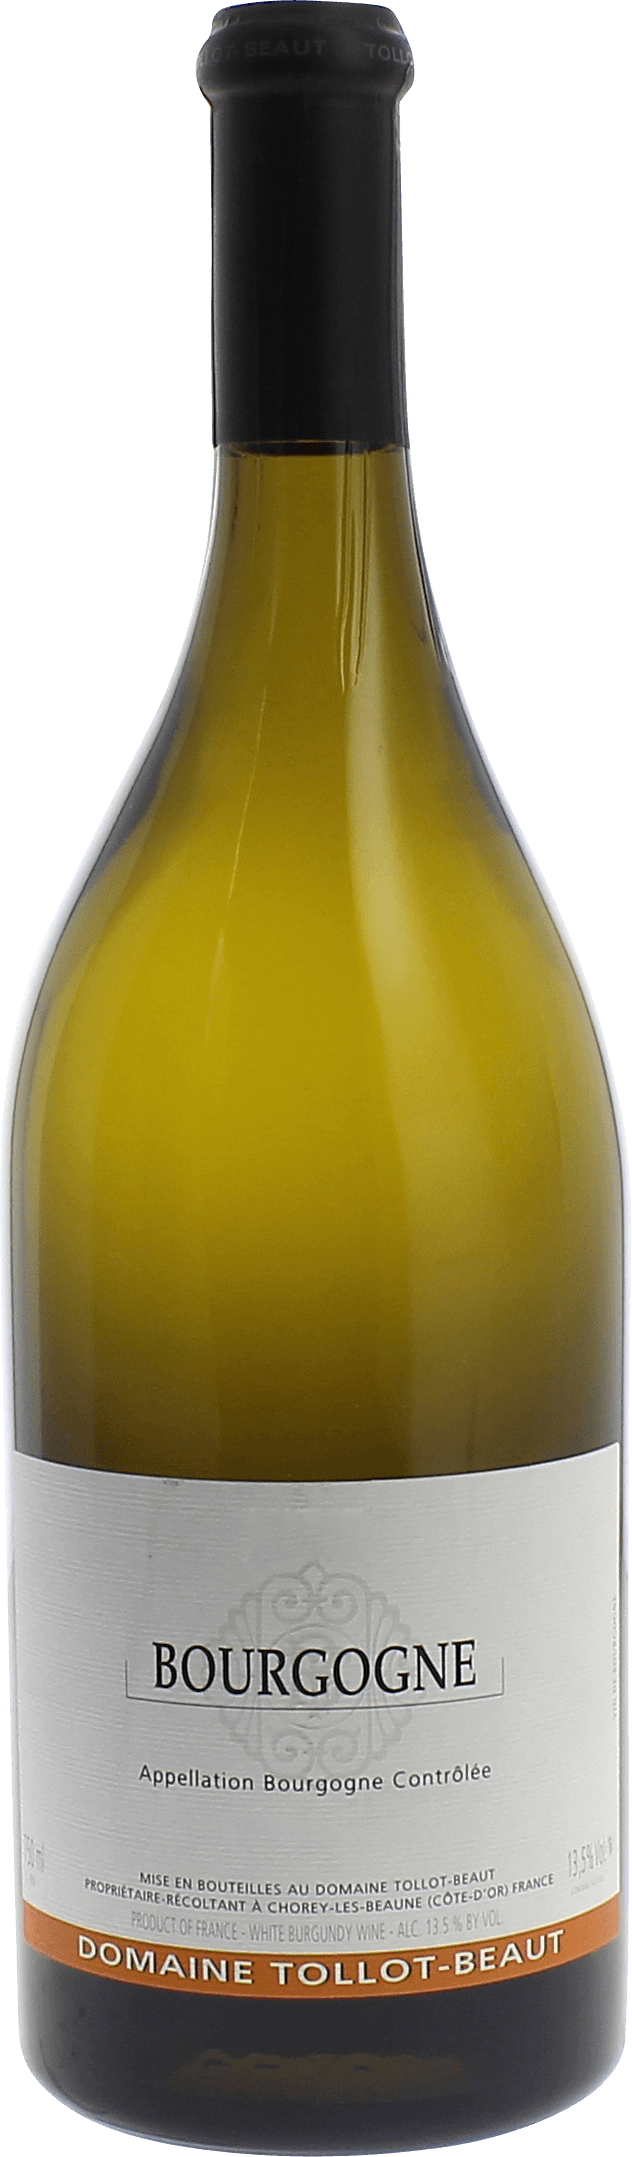 Bourgogne 2016 Domaine TOLLOT BEAUT, Bourgogne blanc